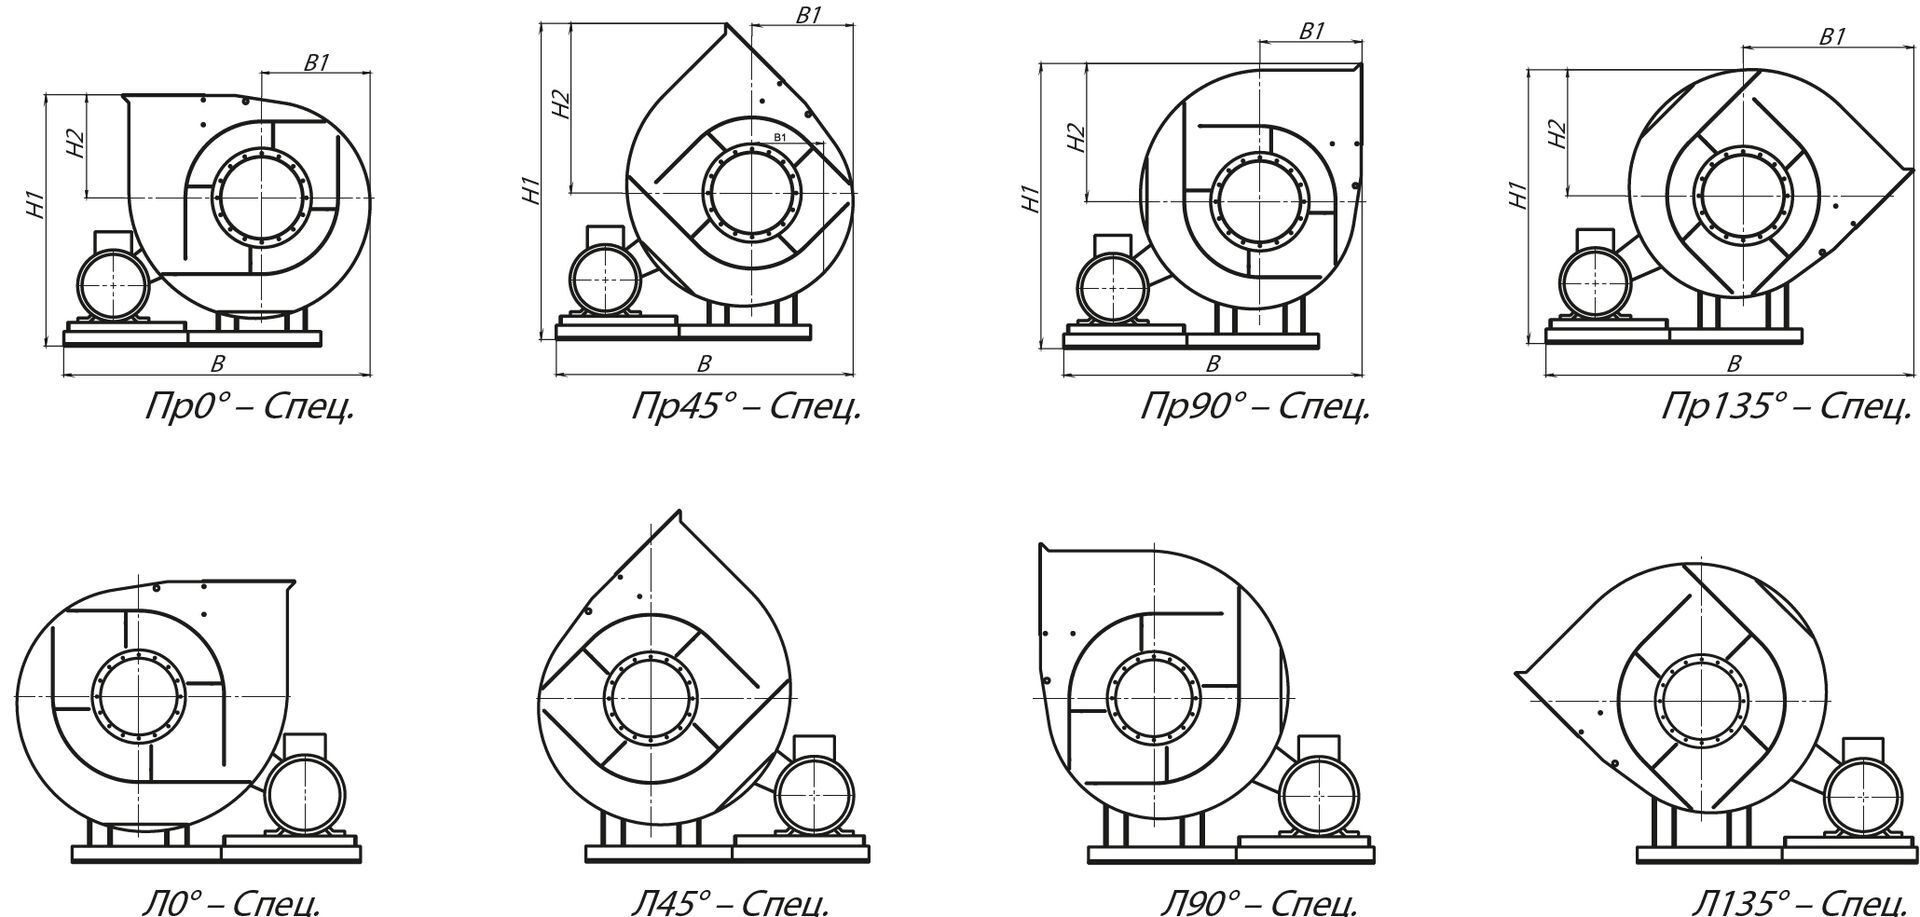 Специальные варианты углов поворота корпуса вентиляторов ВР 130-28-12,5 (№12,5) схема 5 (исполнение 5)